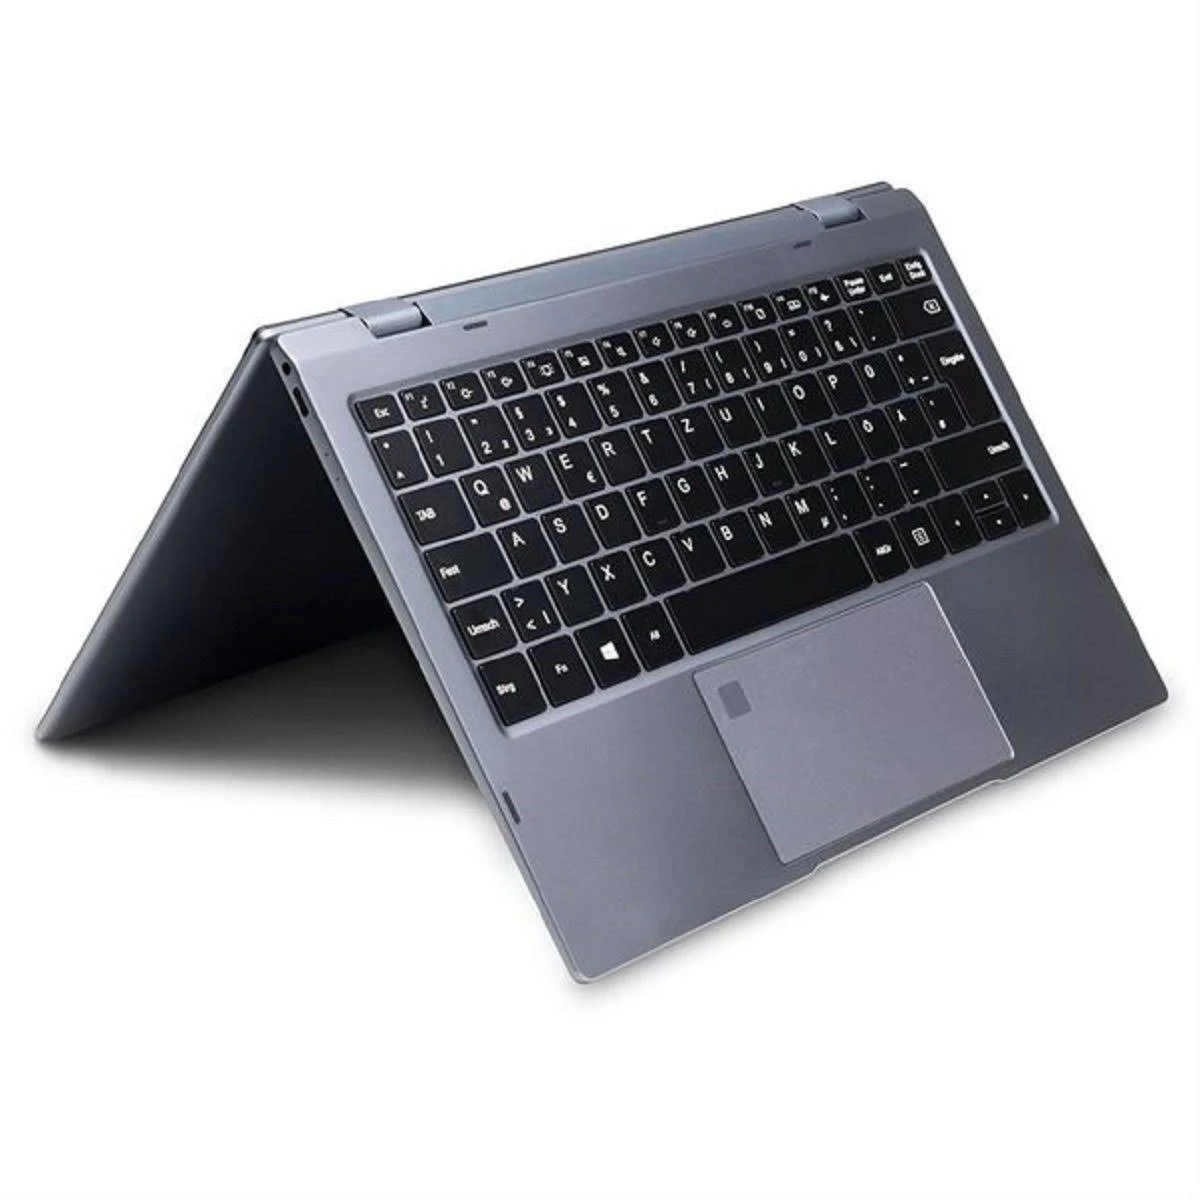 WORTMANN 360-13, mit Intel® 16 Zoll Notebook SSD, RAM, GB Grau 512 i5 Core™ Prozessor, 13,3 Display, GB